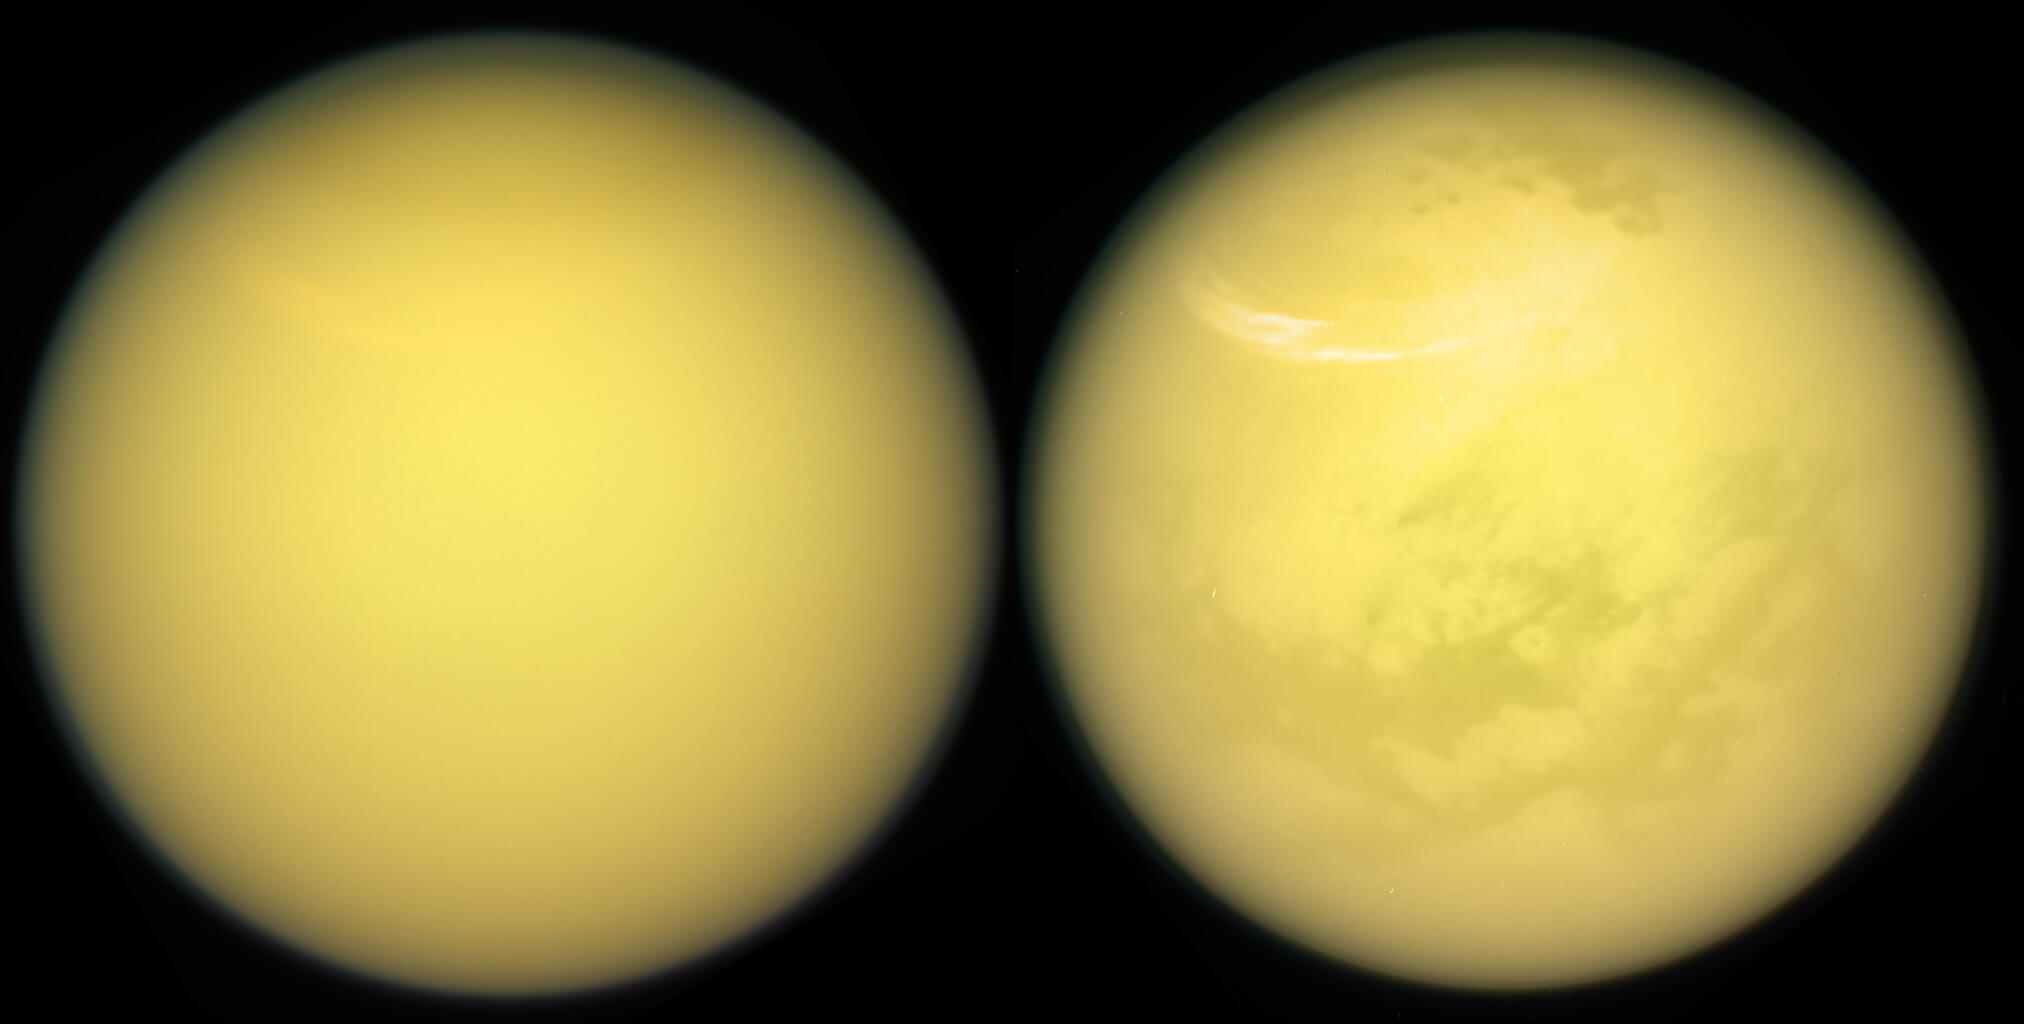 Tutto quello che avreste voluto sapere sul метановых laghi di Titano, ma esitò a chiedere